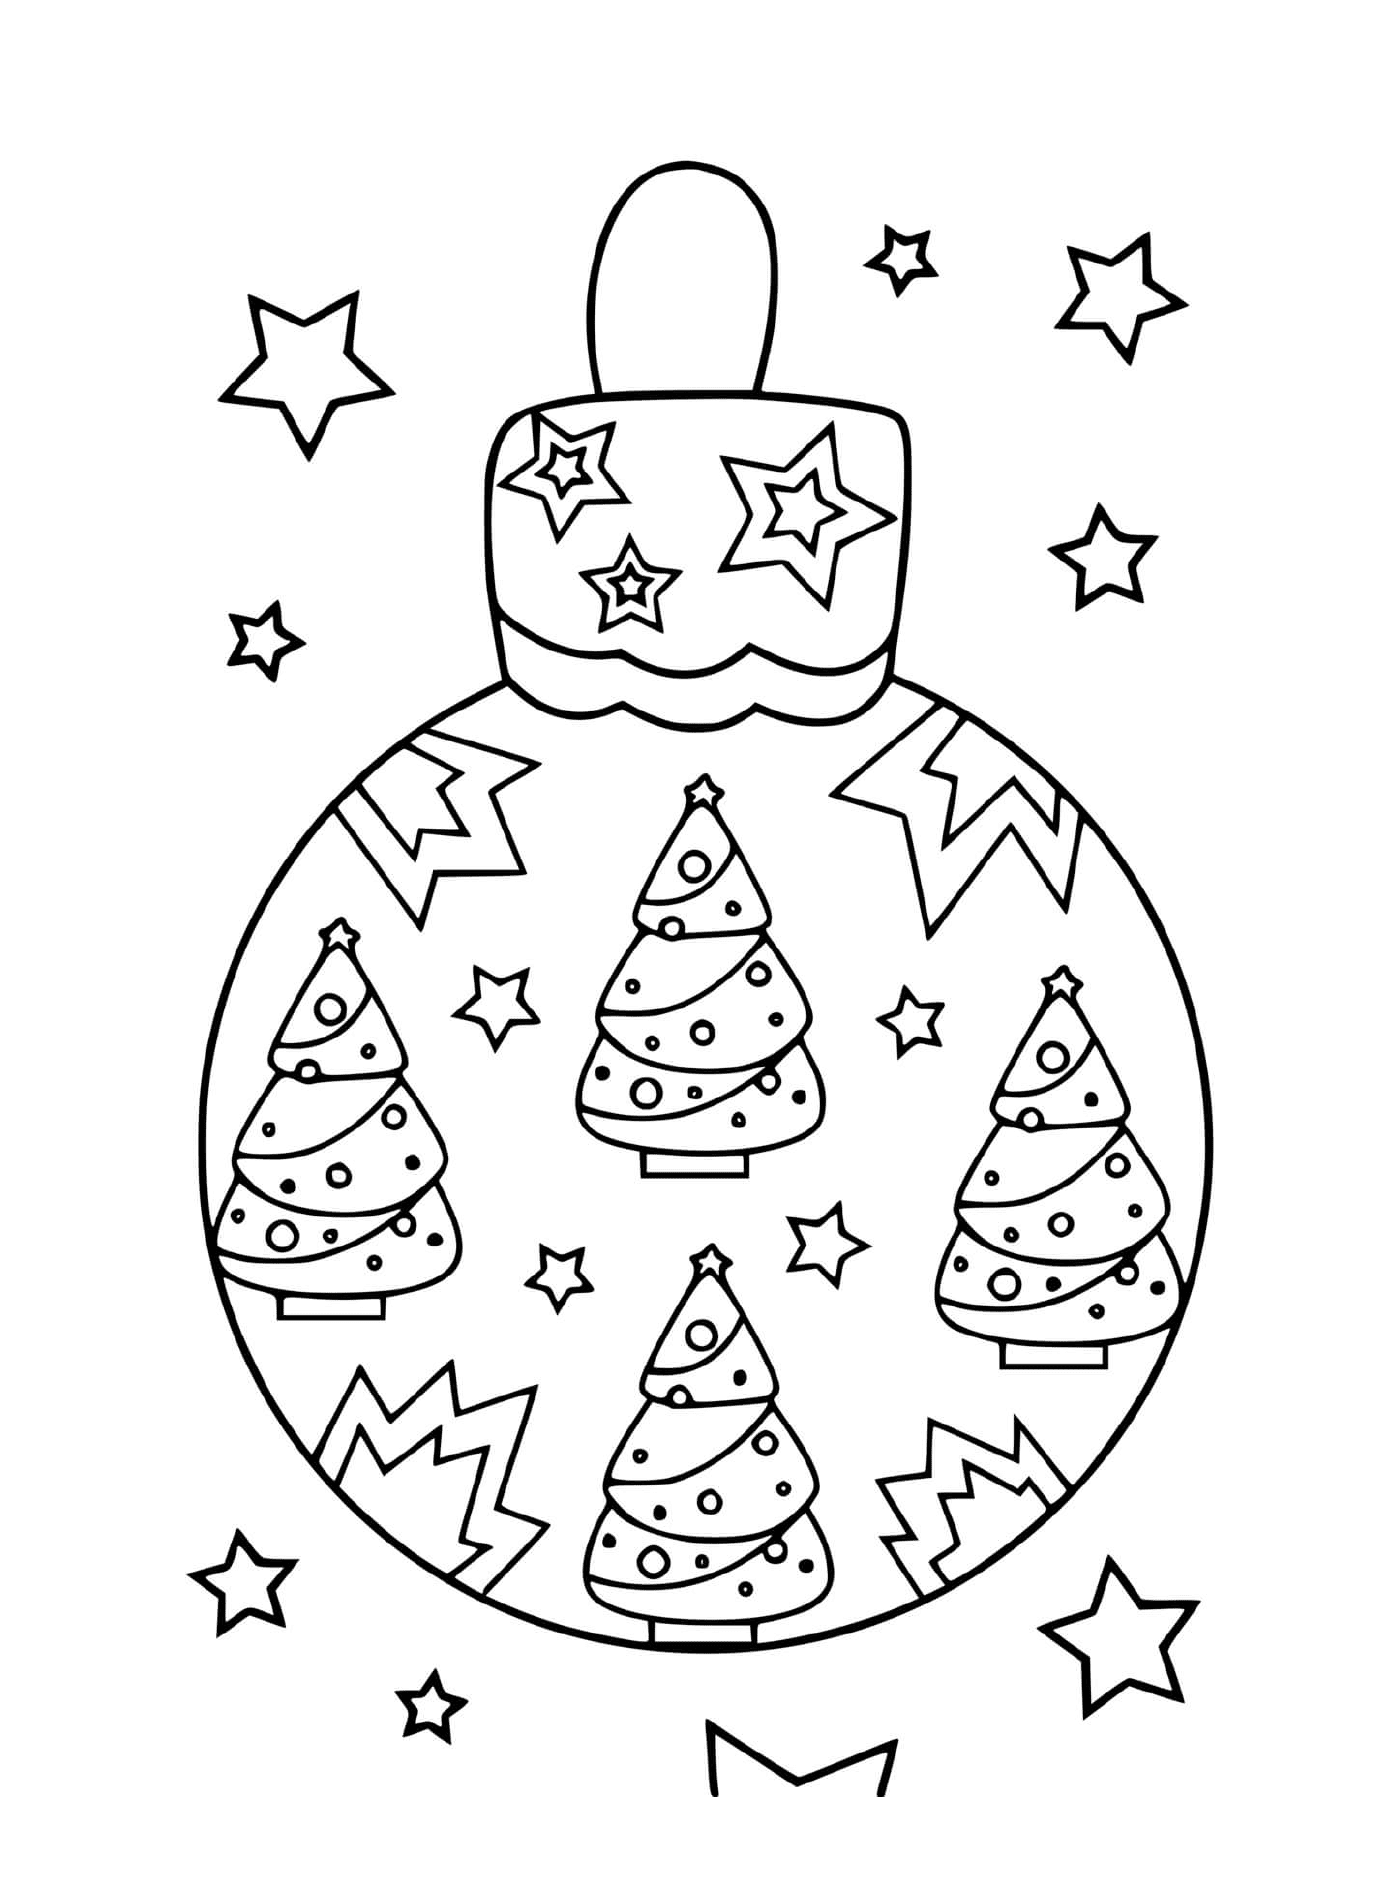  जैतून के पेड़ और तारों के साथ क्रिसमस की गेंद 